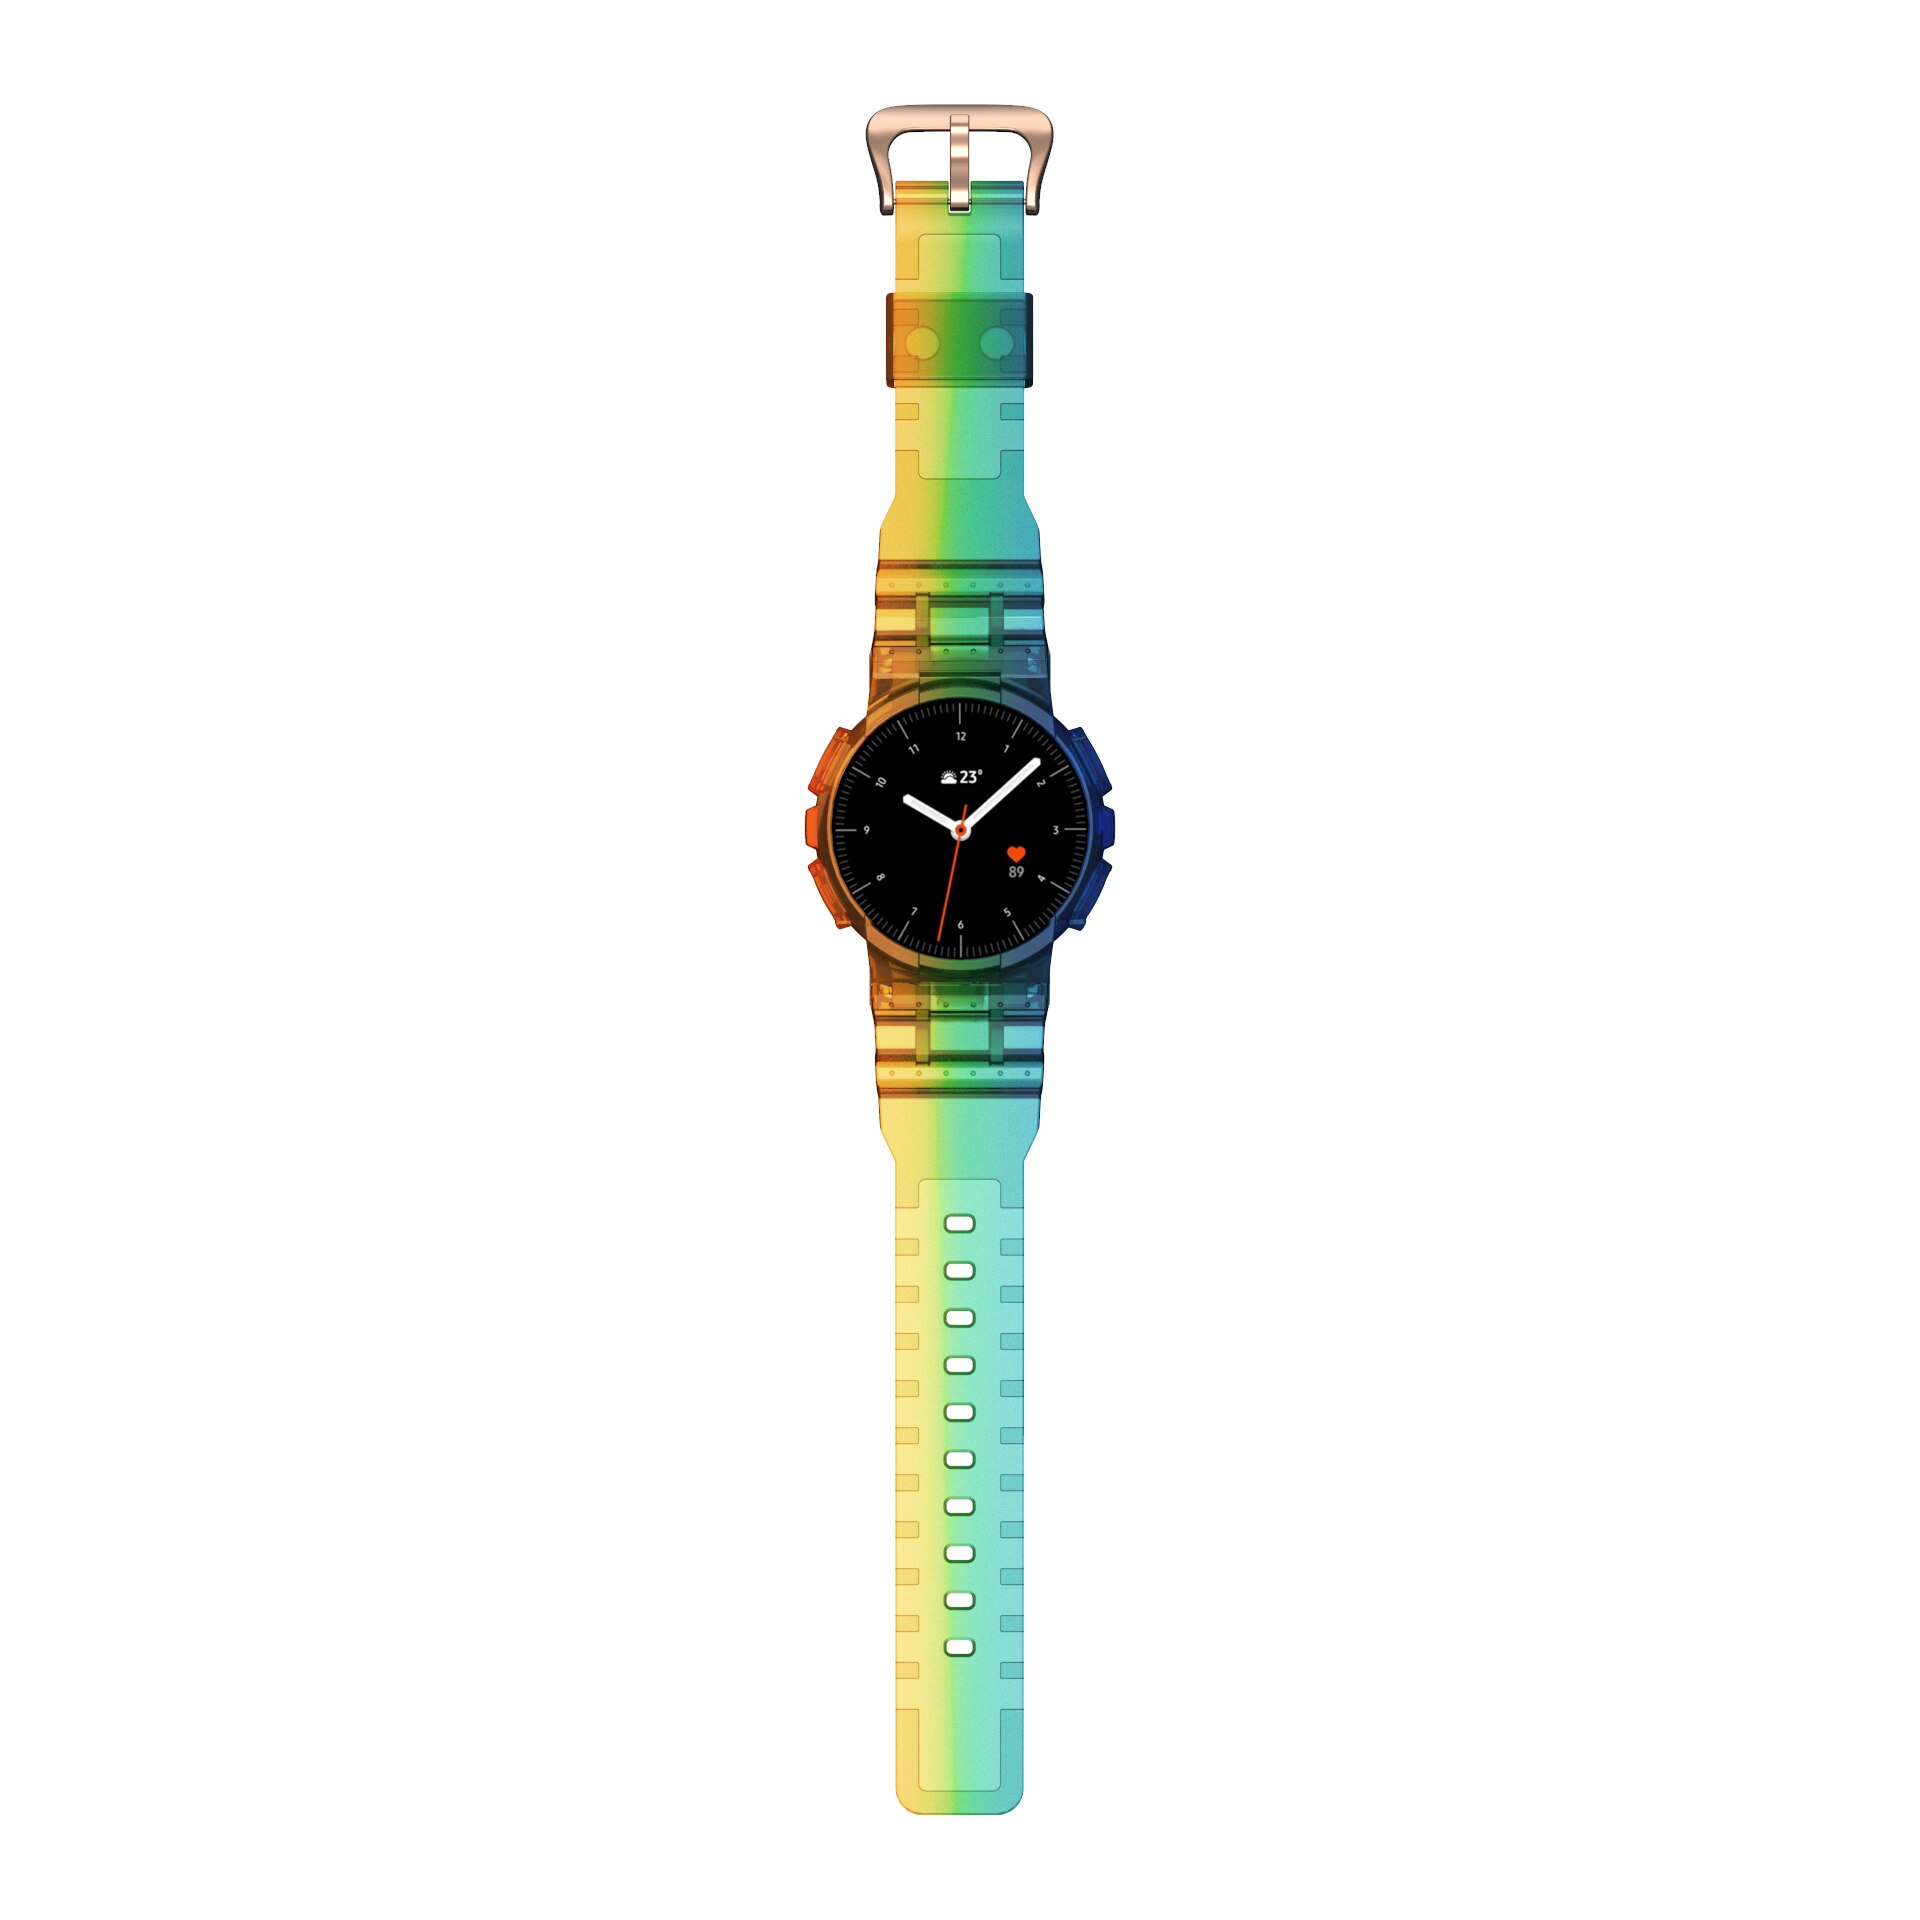 Tpu Horlogeband Voor Samsung Galaxy Actieve 2 40Mm Sport Strap Transparante Band + Case Voor Correa Galaxy Horloge actieve 2 Band: Multicolor